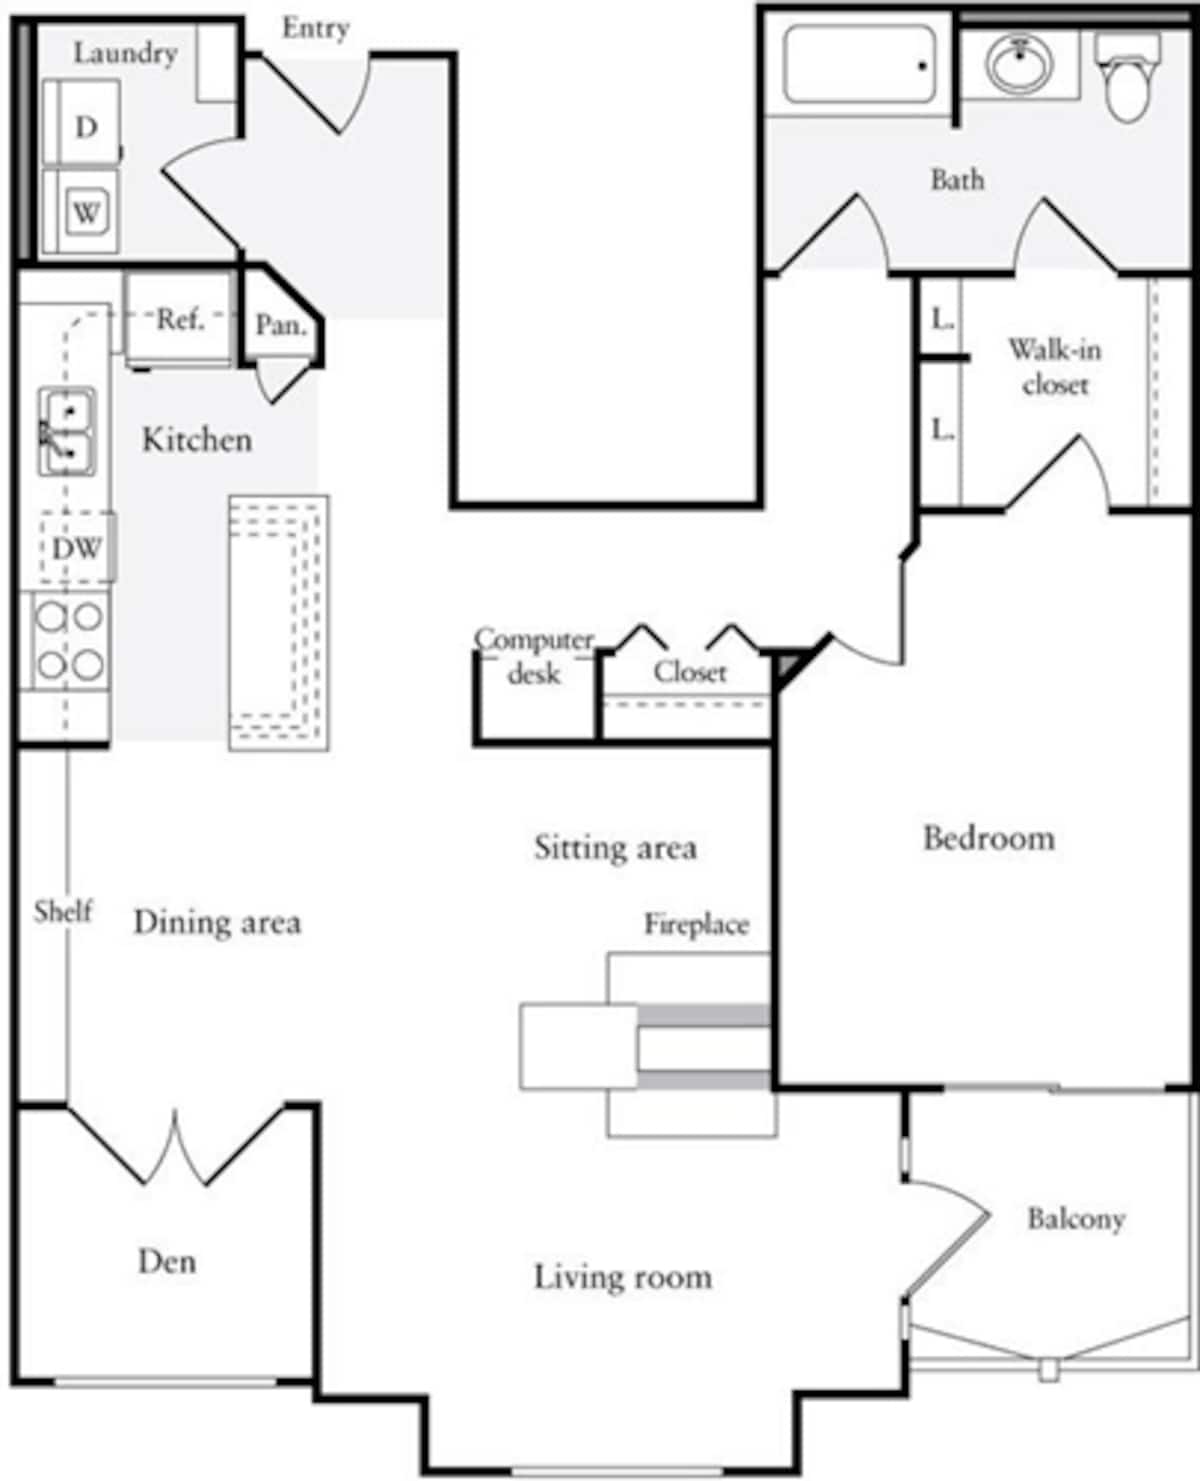 Floorplan diagram for 1 Bedroom G, showing 1 bedroom